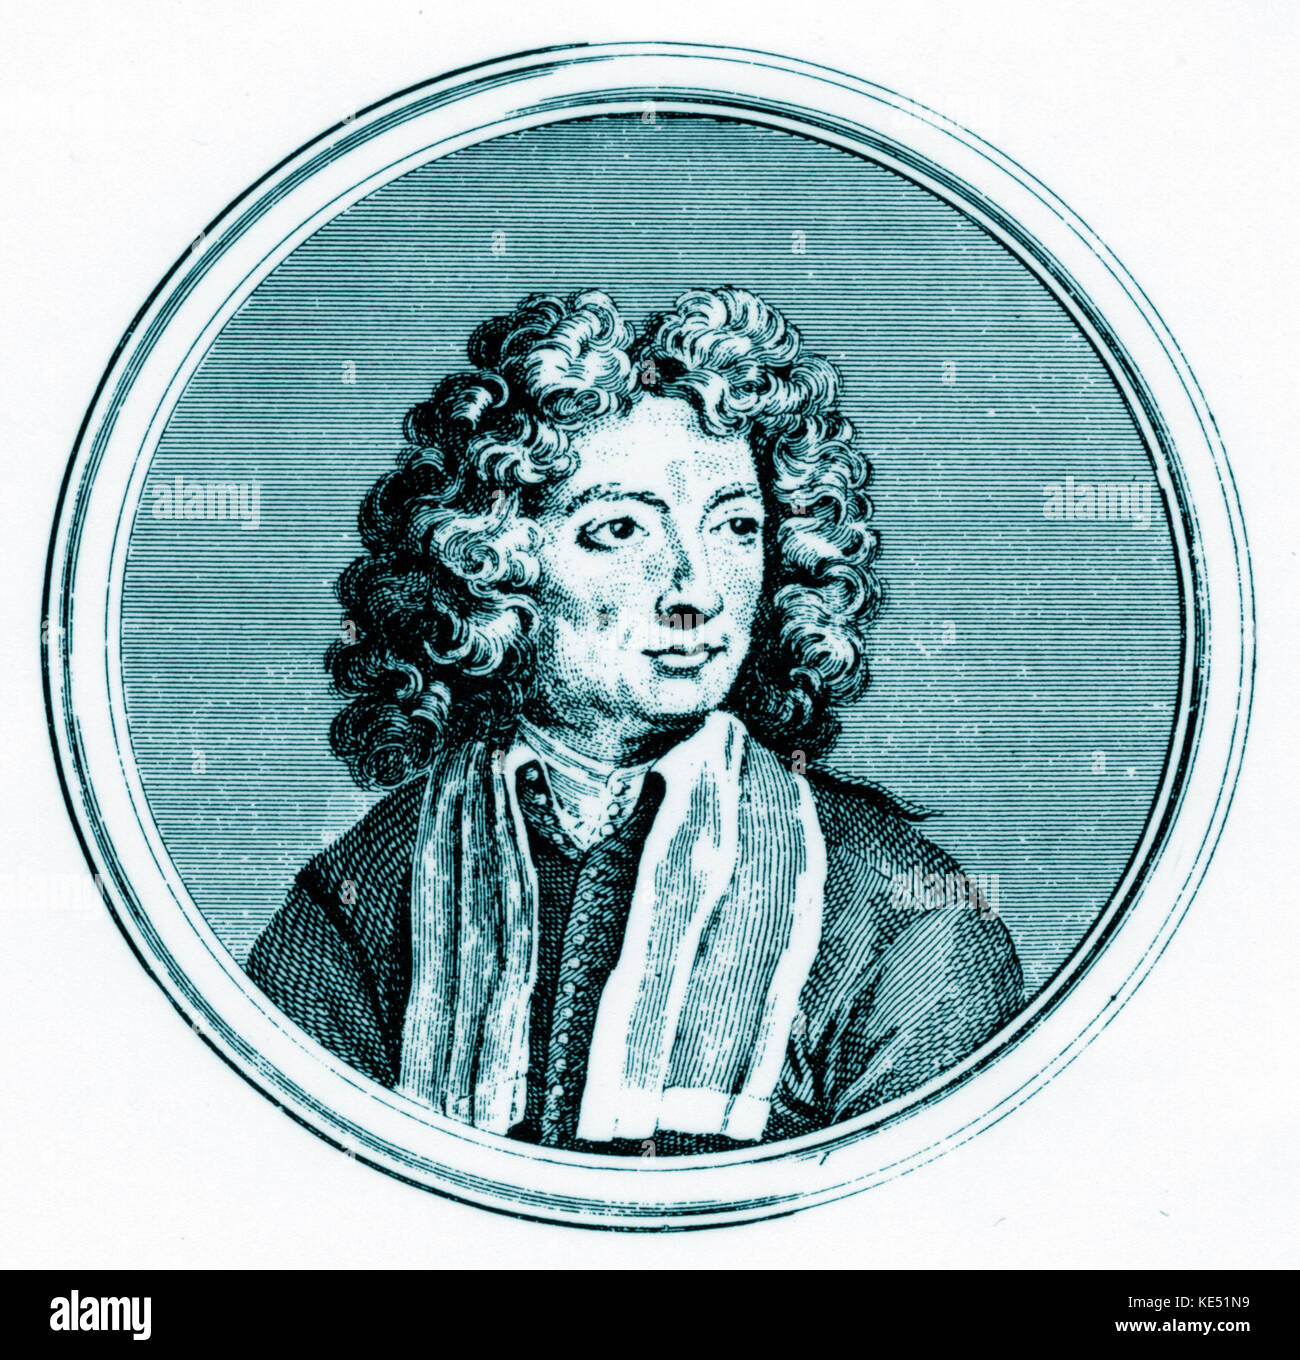 Arcangelo Corelli retrato. Violinista y compositor italiano. 17 de febrero de 1653 - 8 de enero de 1713 Foto de stock